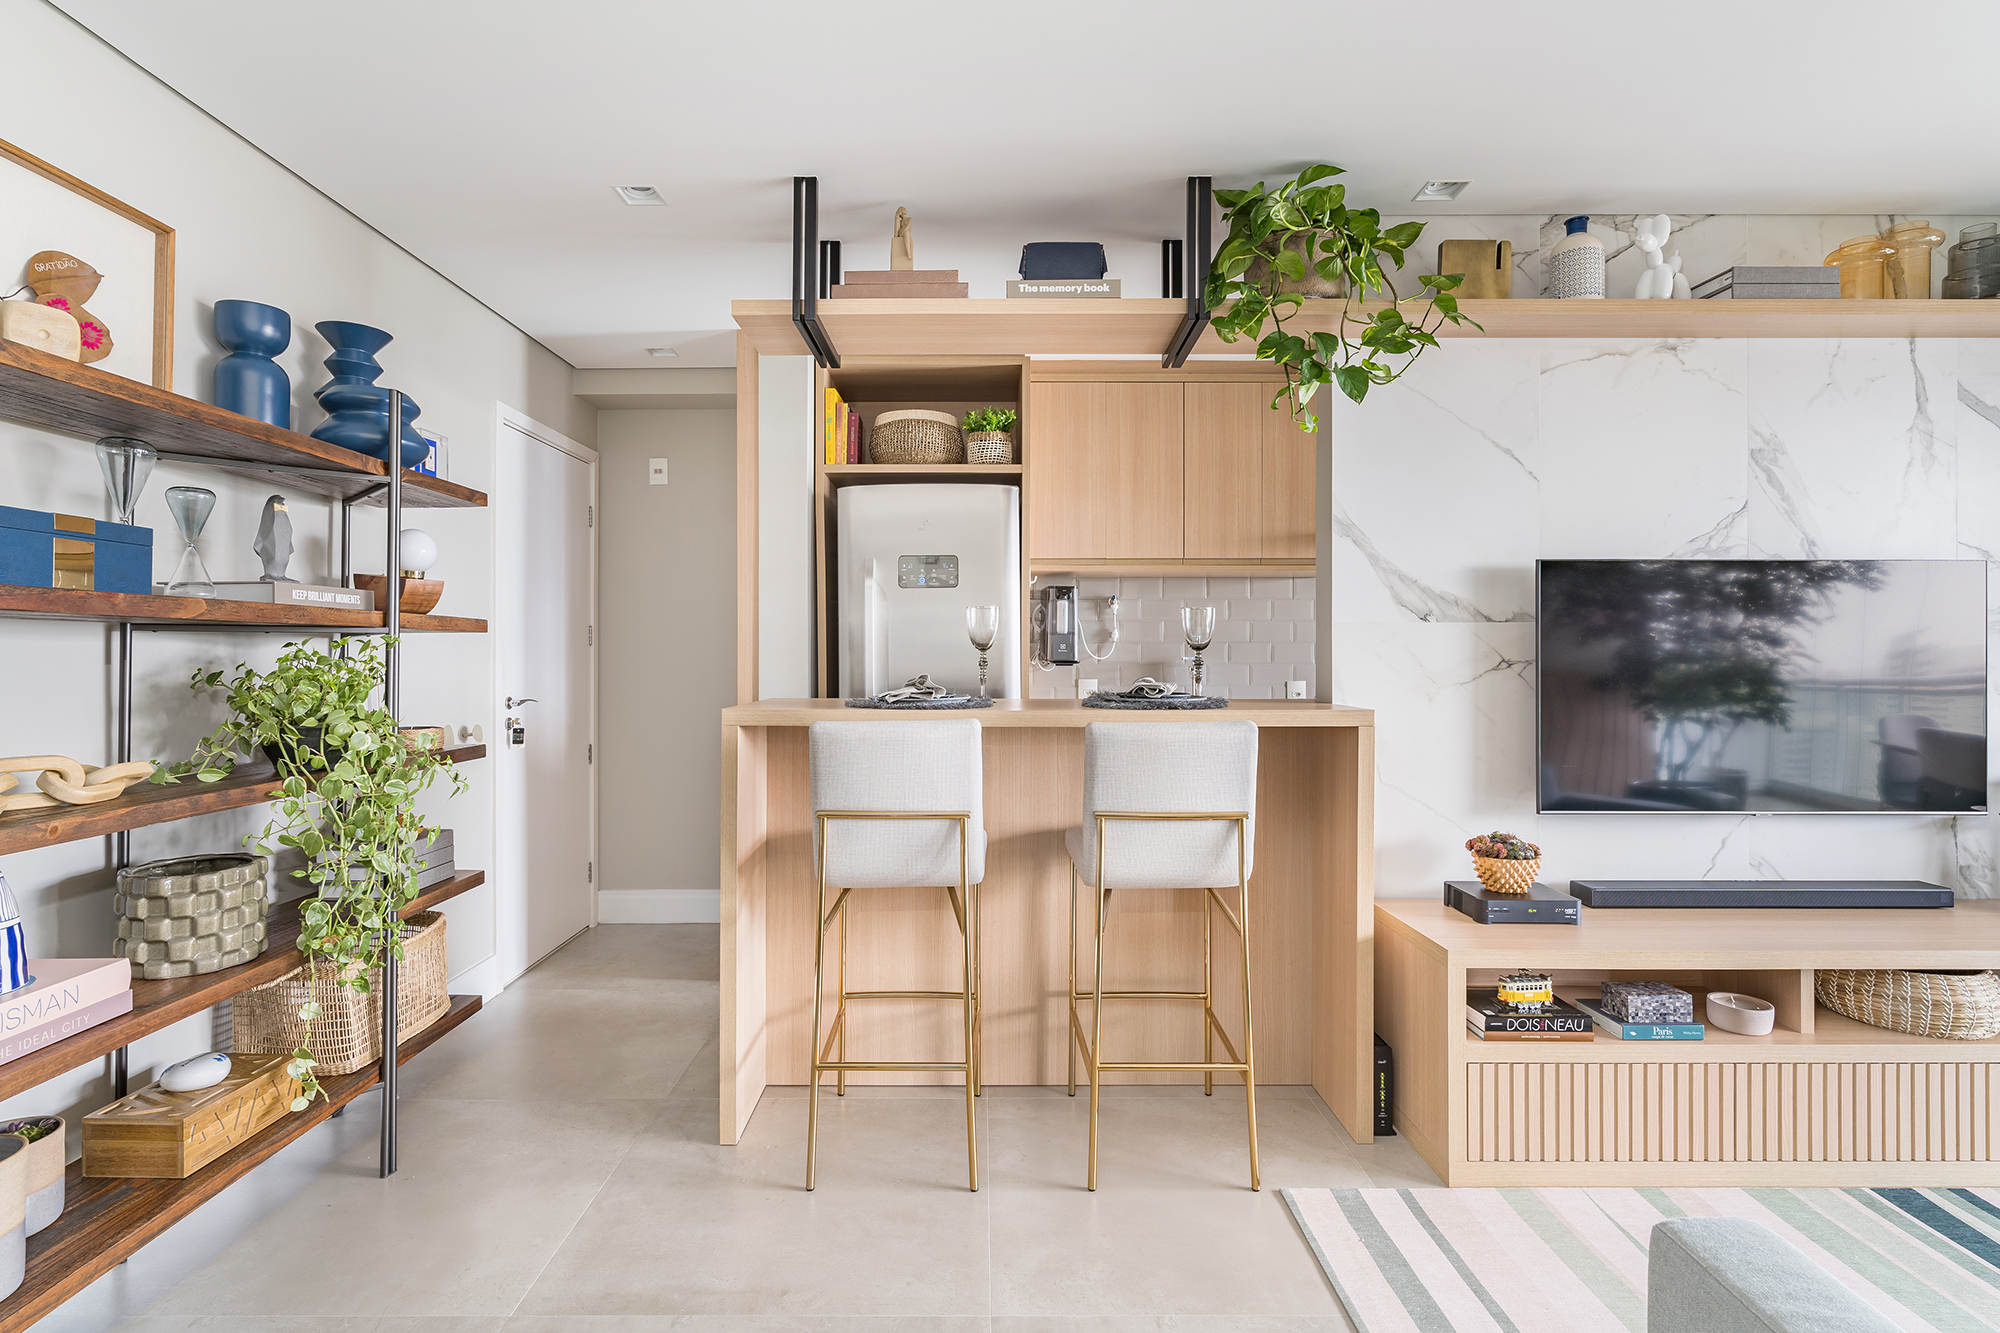 Apartamento de 60 m² ganha décor delicado repleto de madeira e plantas. Projeto de Bia Hajnal. Na foto, cozinha americana com balcão, prateleira suspensa e estante com lembranças de viagem.